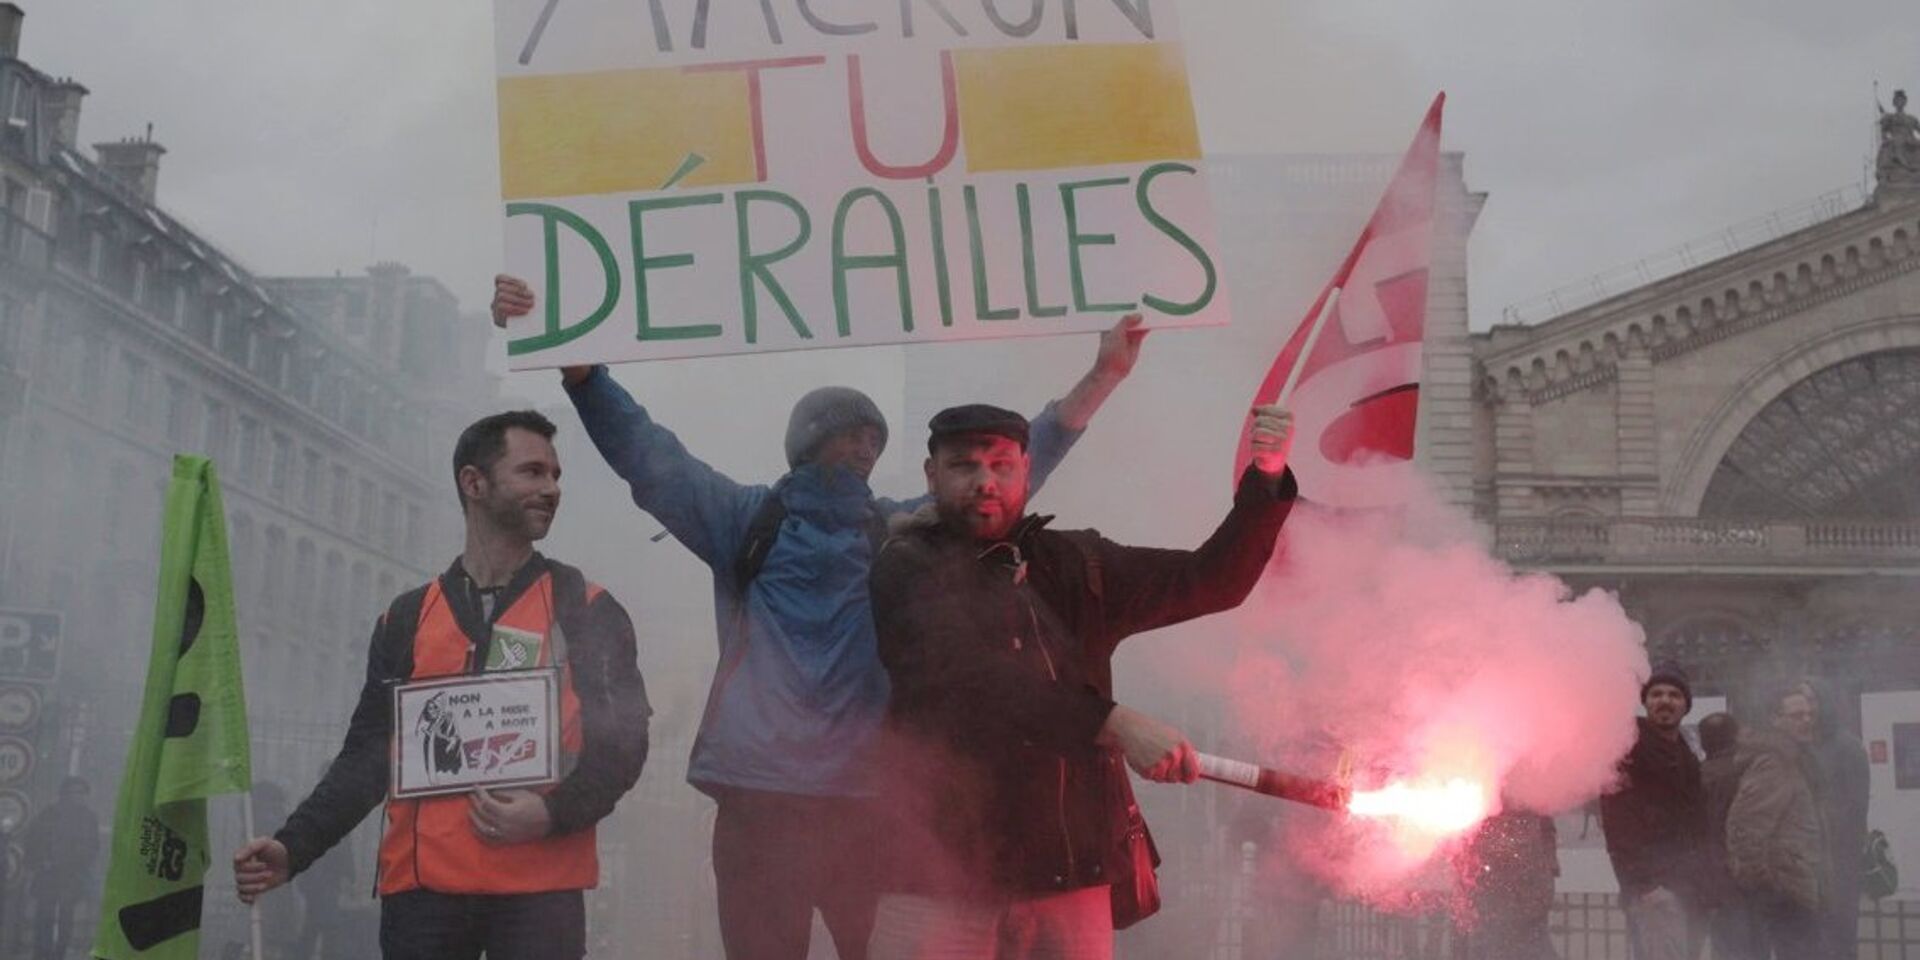 Забастовка работников железных дорог во Франции. 3 апреля 2018 - ИноСМИ, 1920, 13.10.2022